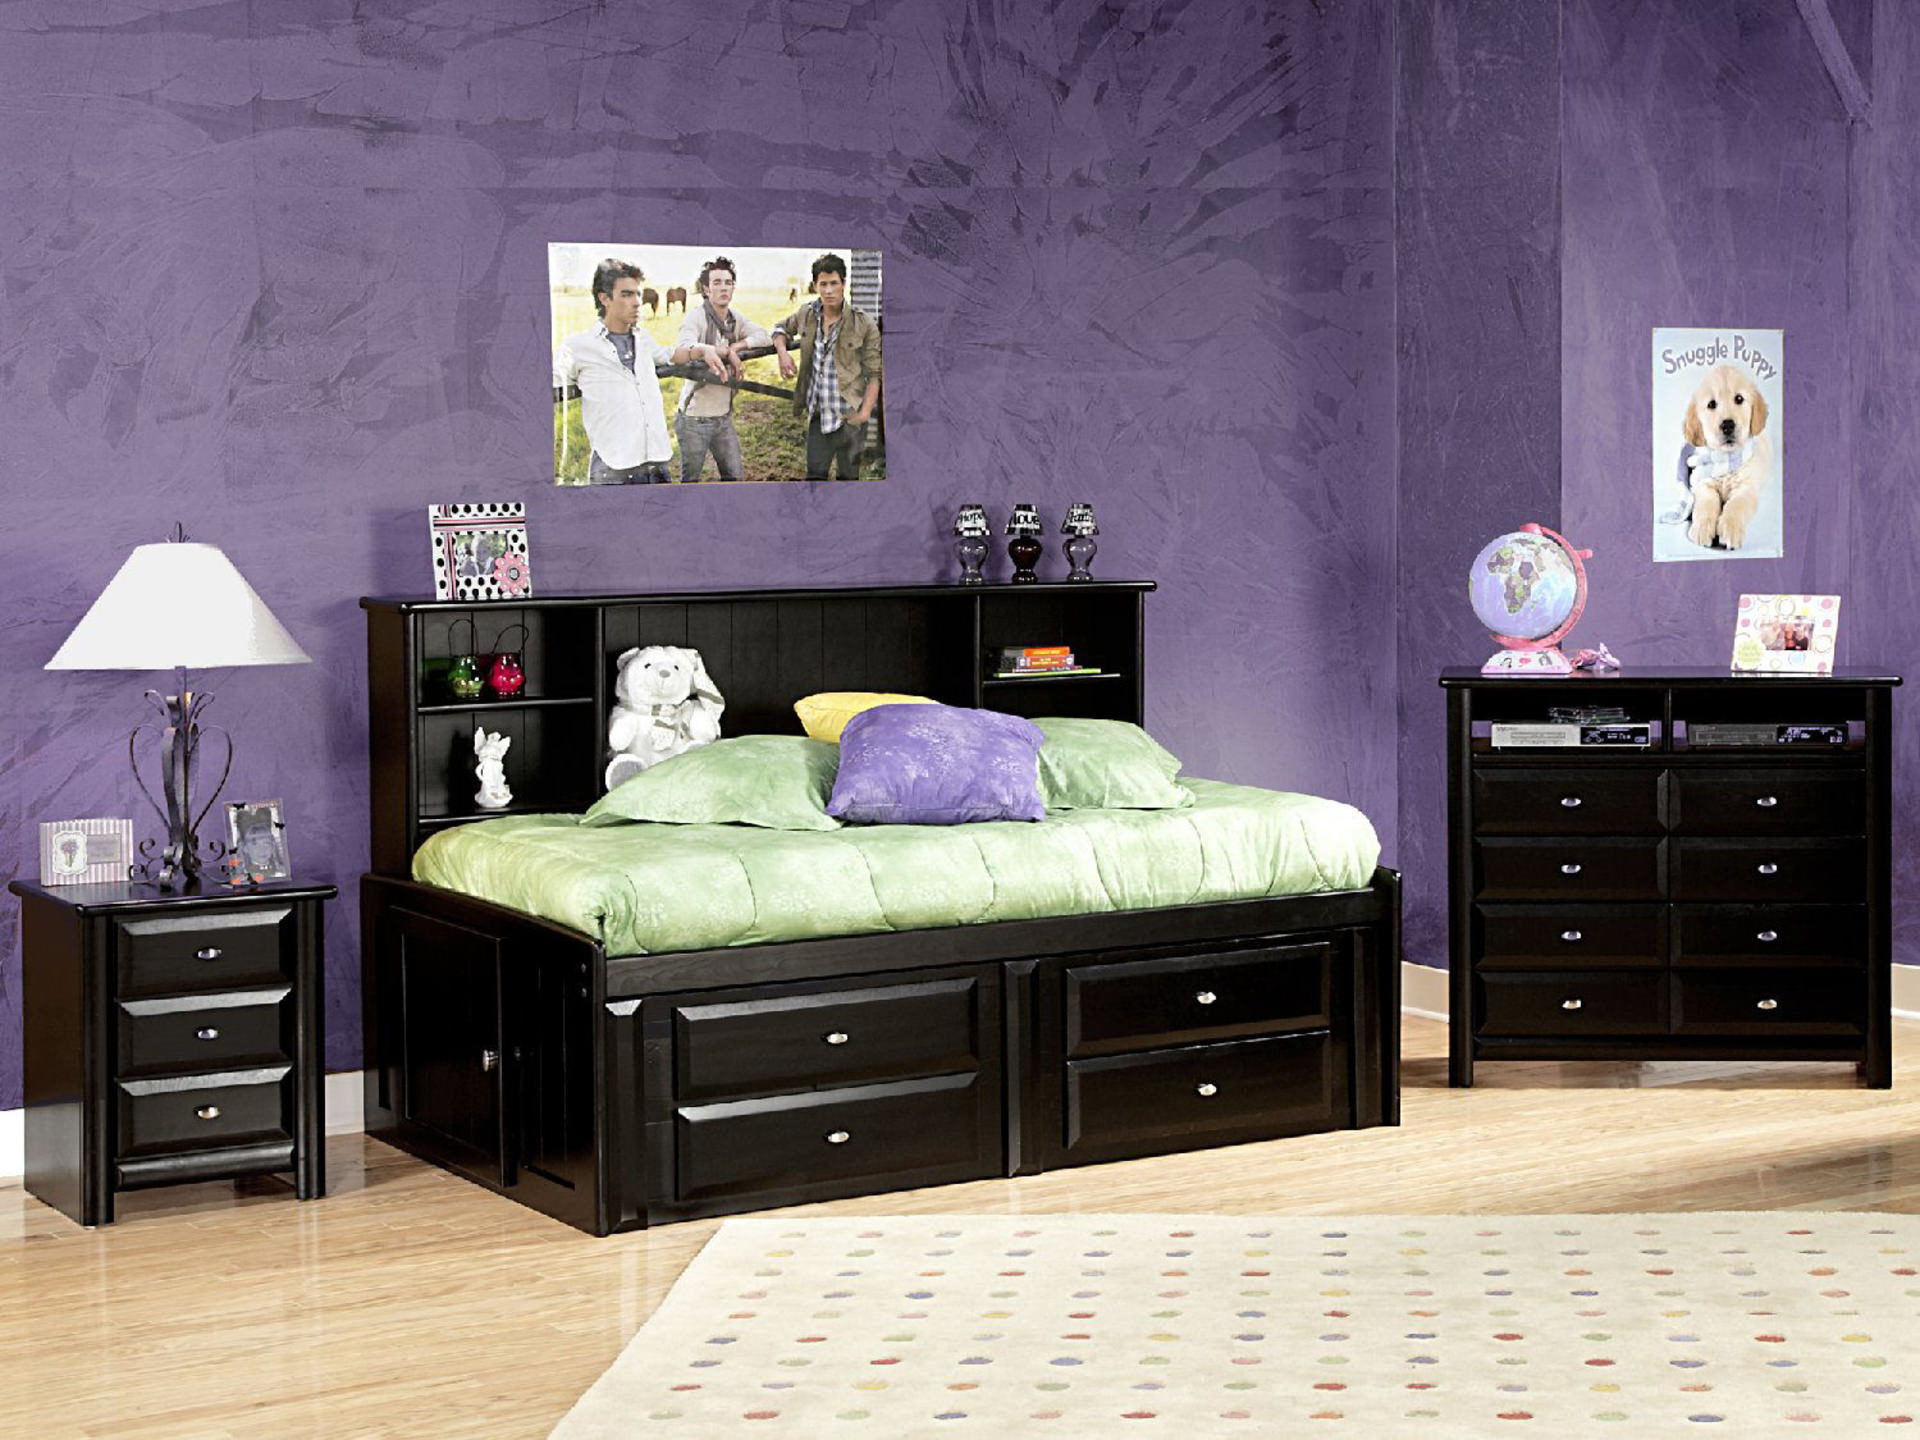 Kids Bedroom Design Tips Design Blog By Hom Furniture